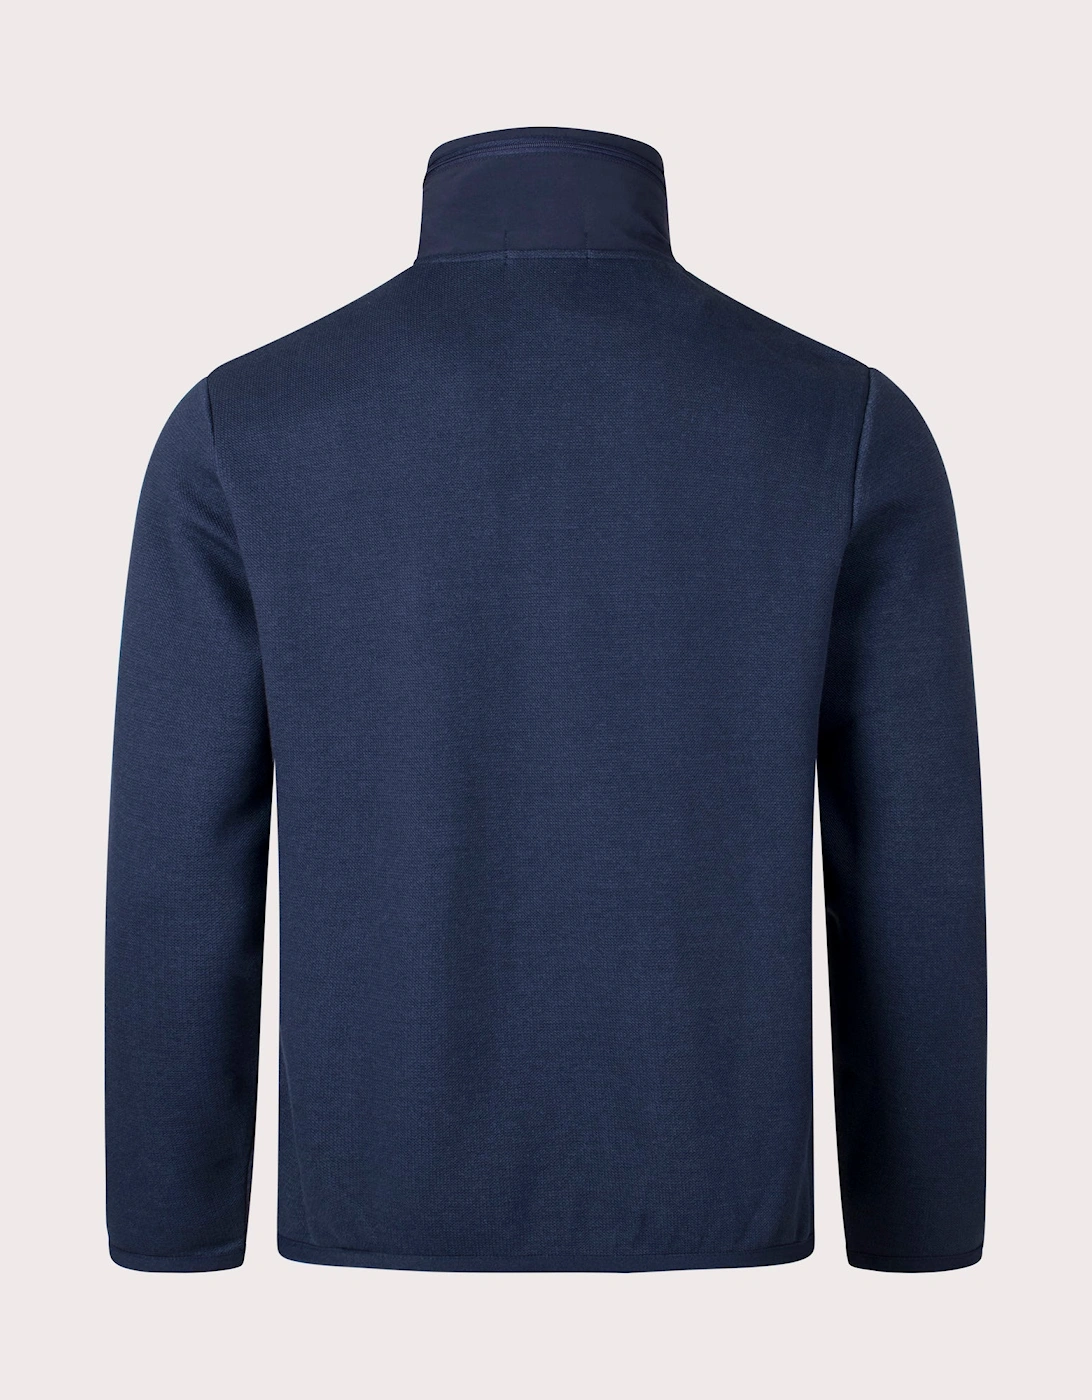 Conceled Hood Quarter Zip Sweatshirt